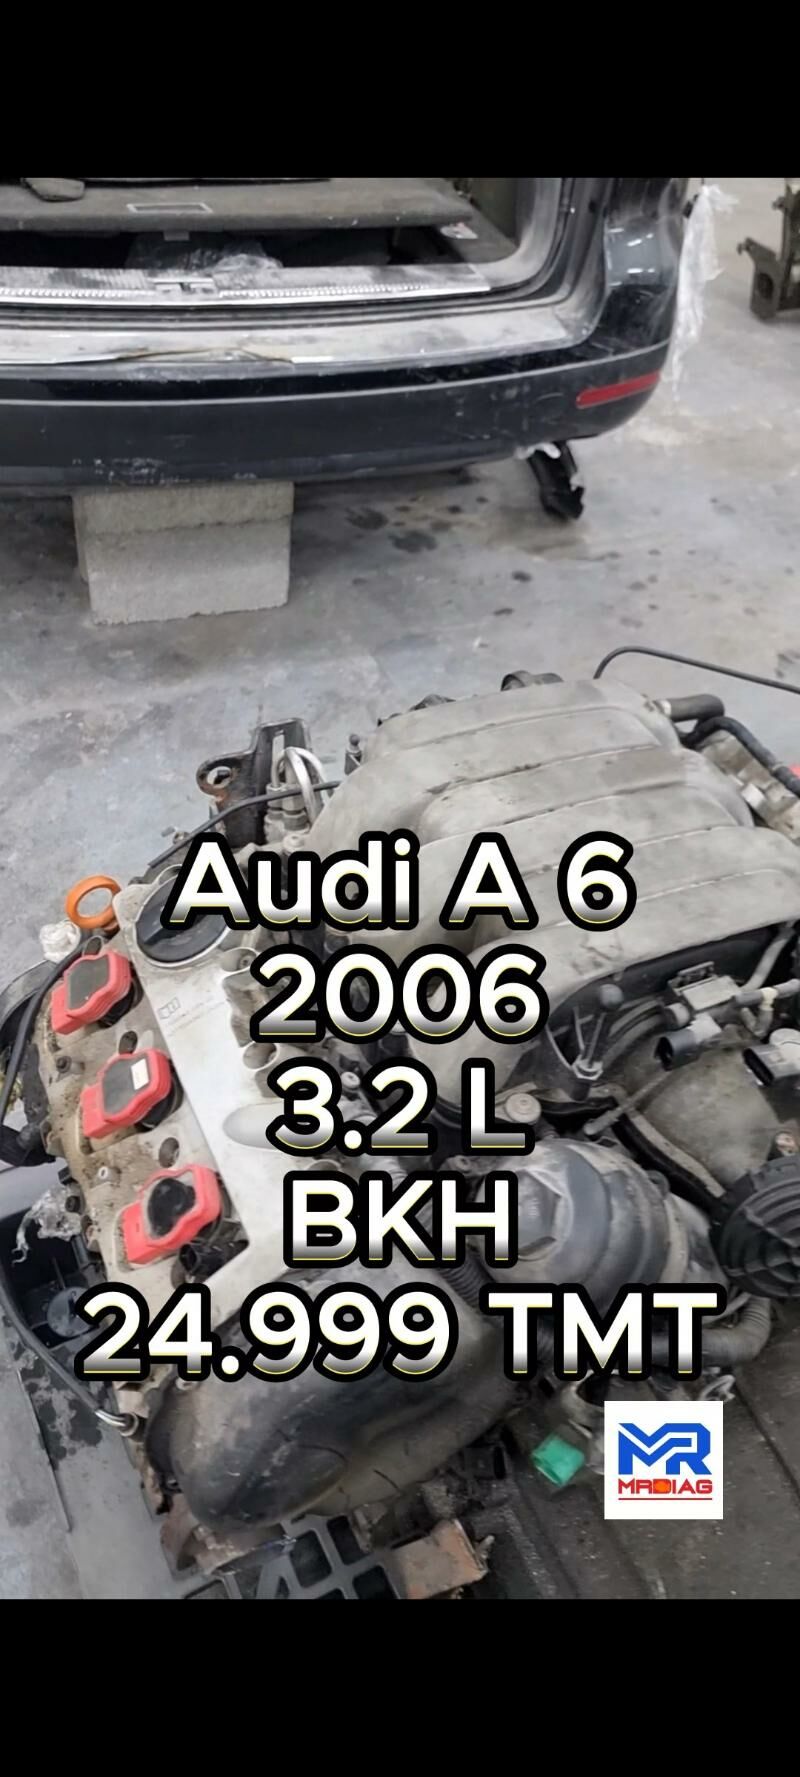 Моторы BMW,Audi,VW 13 999 TMT - 6 mkr - img 3